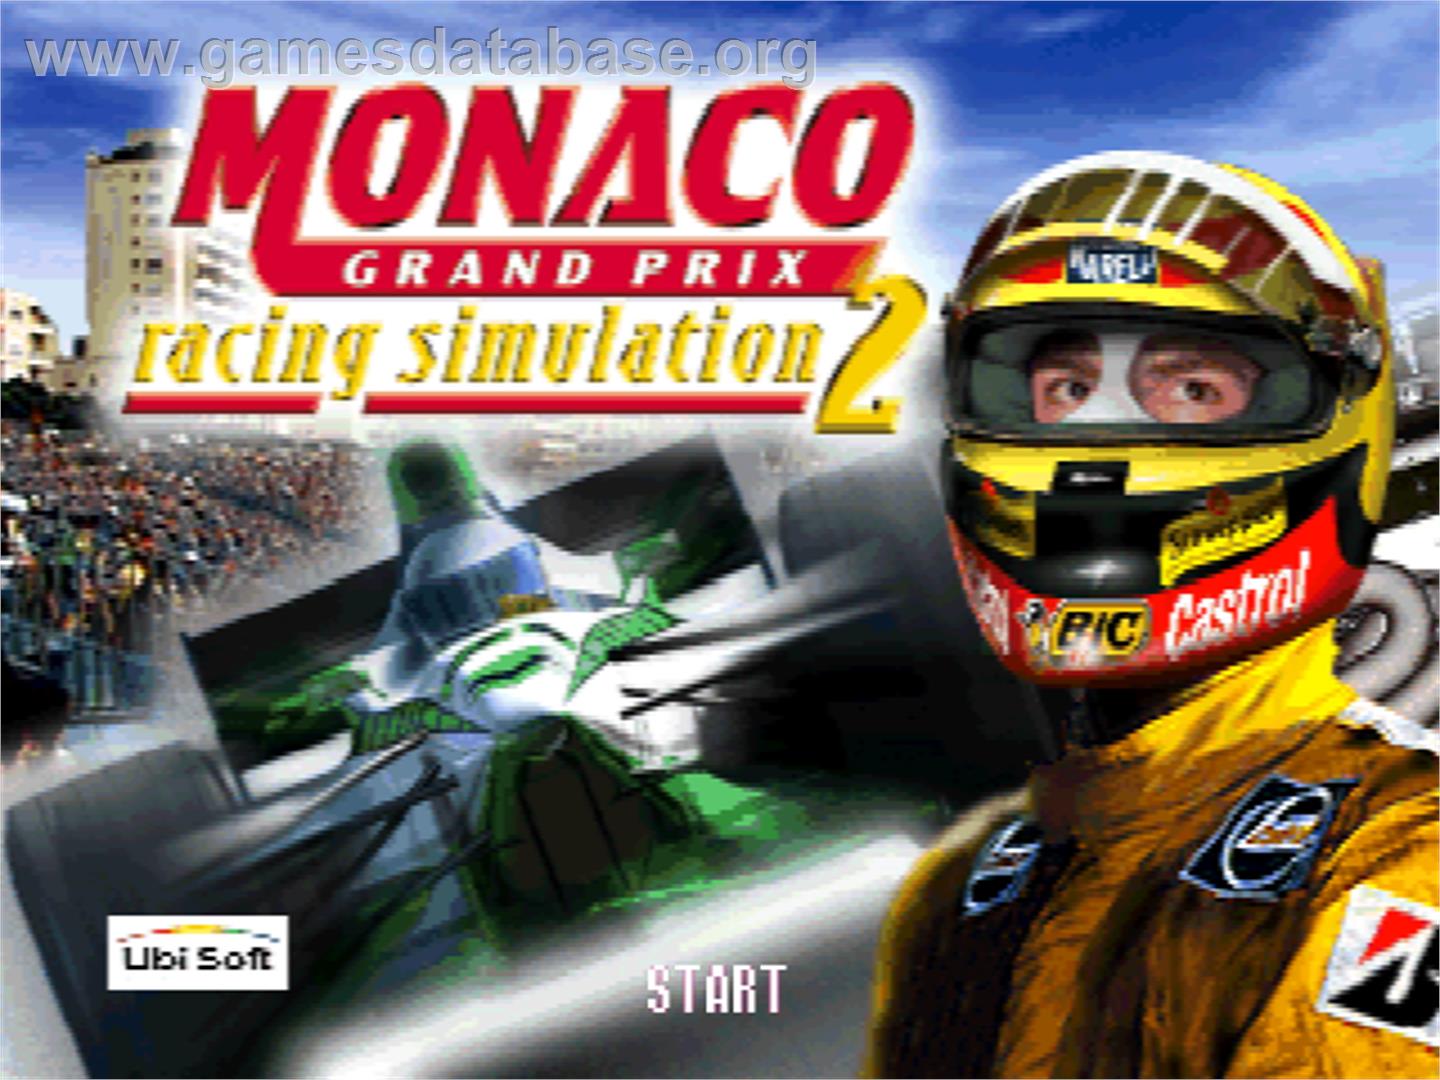 Monaco Grand Prix Racing Simulation 2 - Nintendo N64 - Artwork - Title Screen